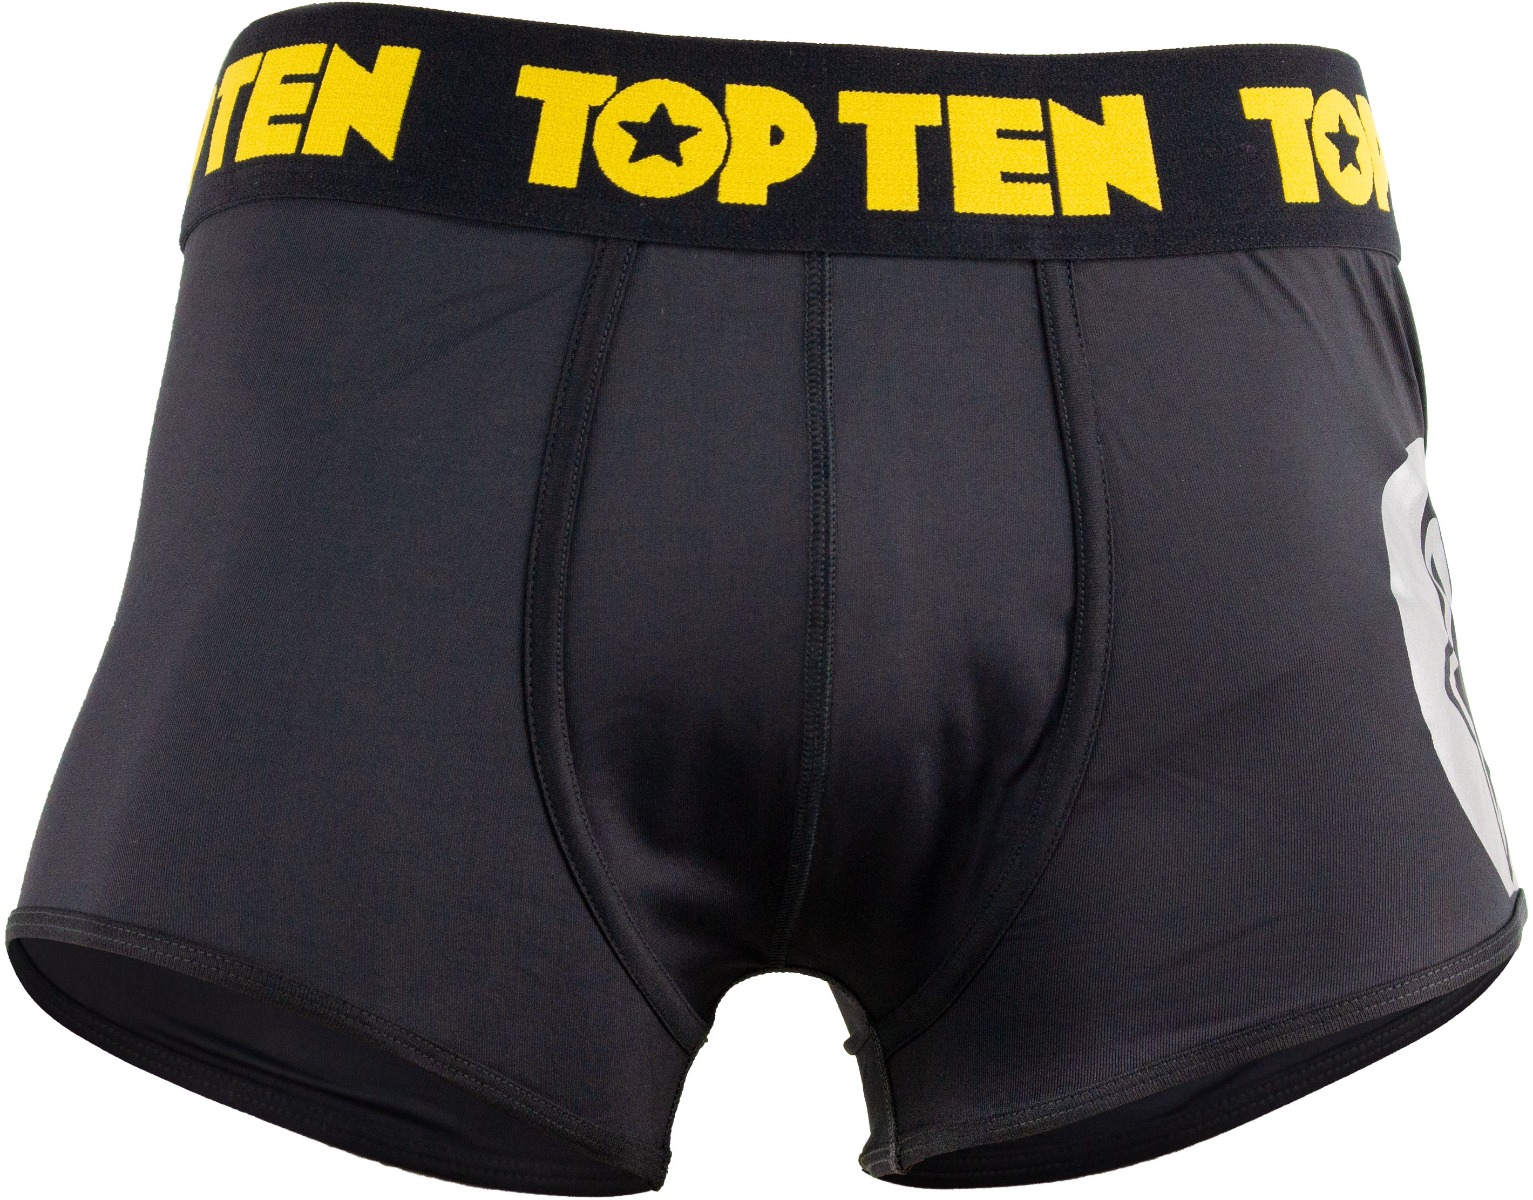 TOP TEN Boxershorts Zwart - goud